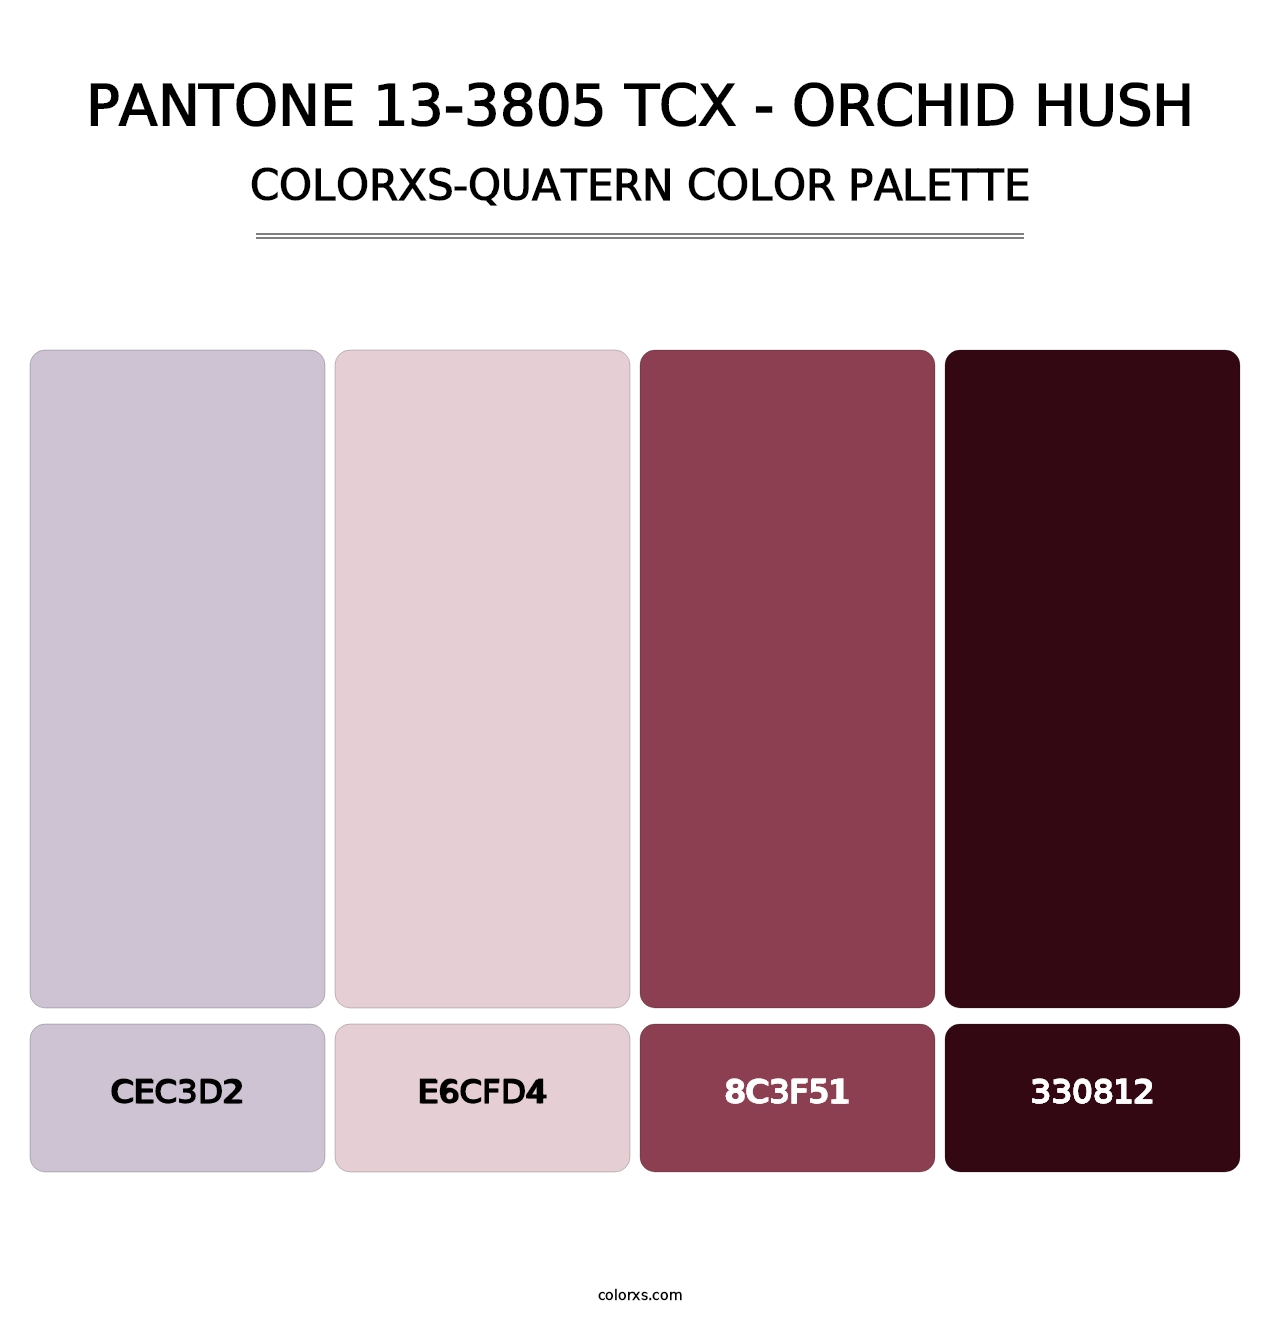 PANTONE 13-3805 TCX - Orchid Hush - Colorxs Quatern Palette